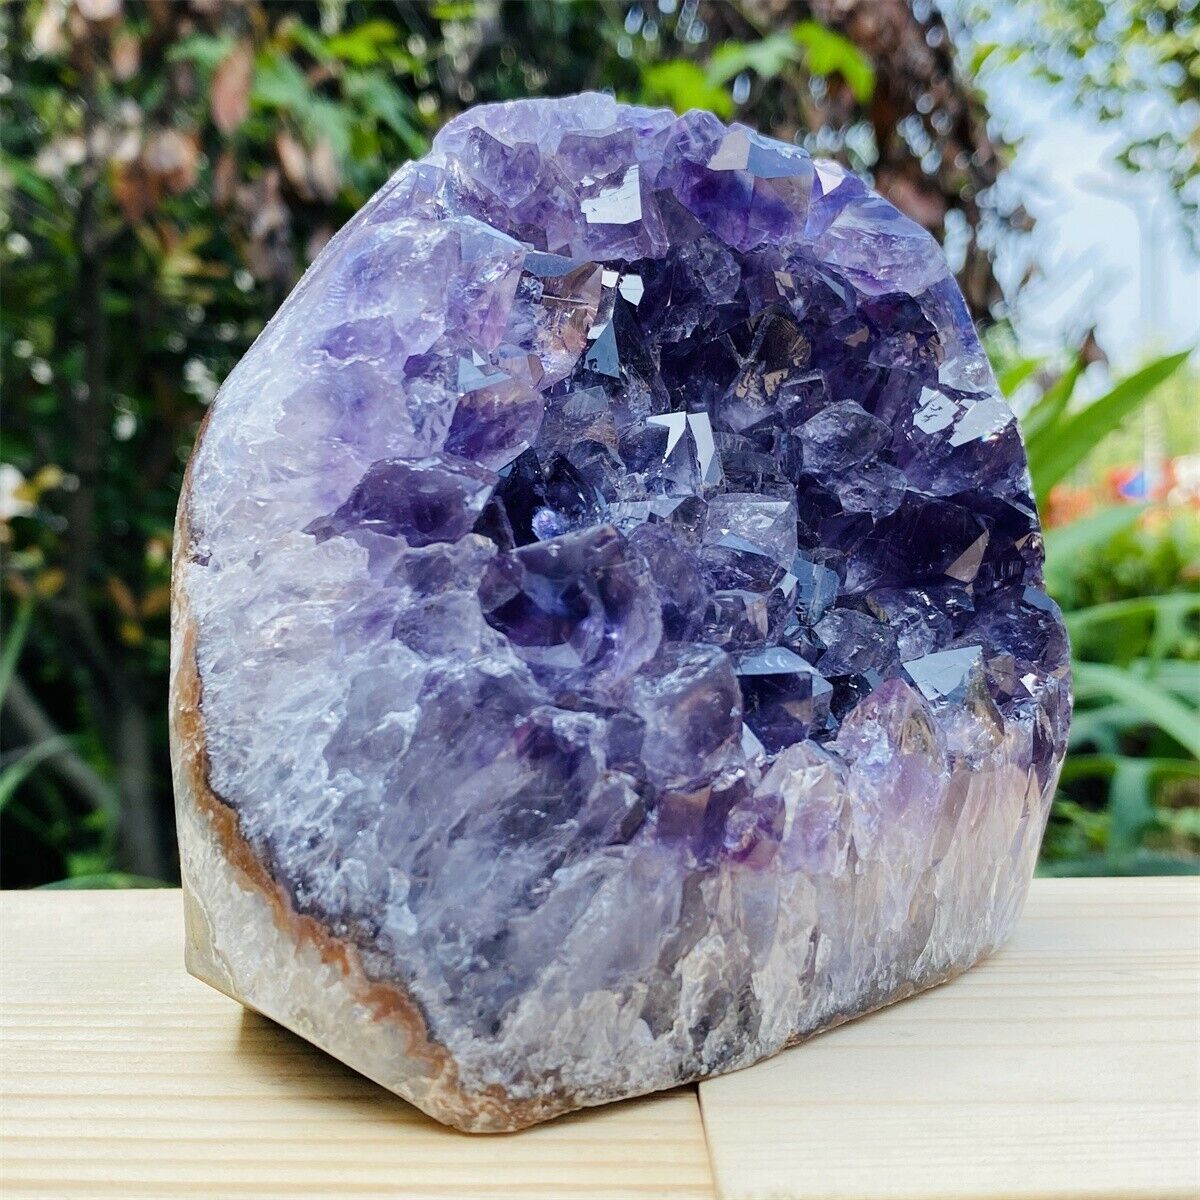 1760g Natural amethyst cave quartz crystal cluster mineral specimen healing